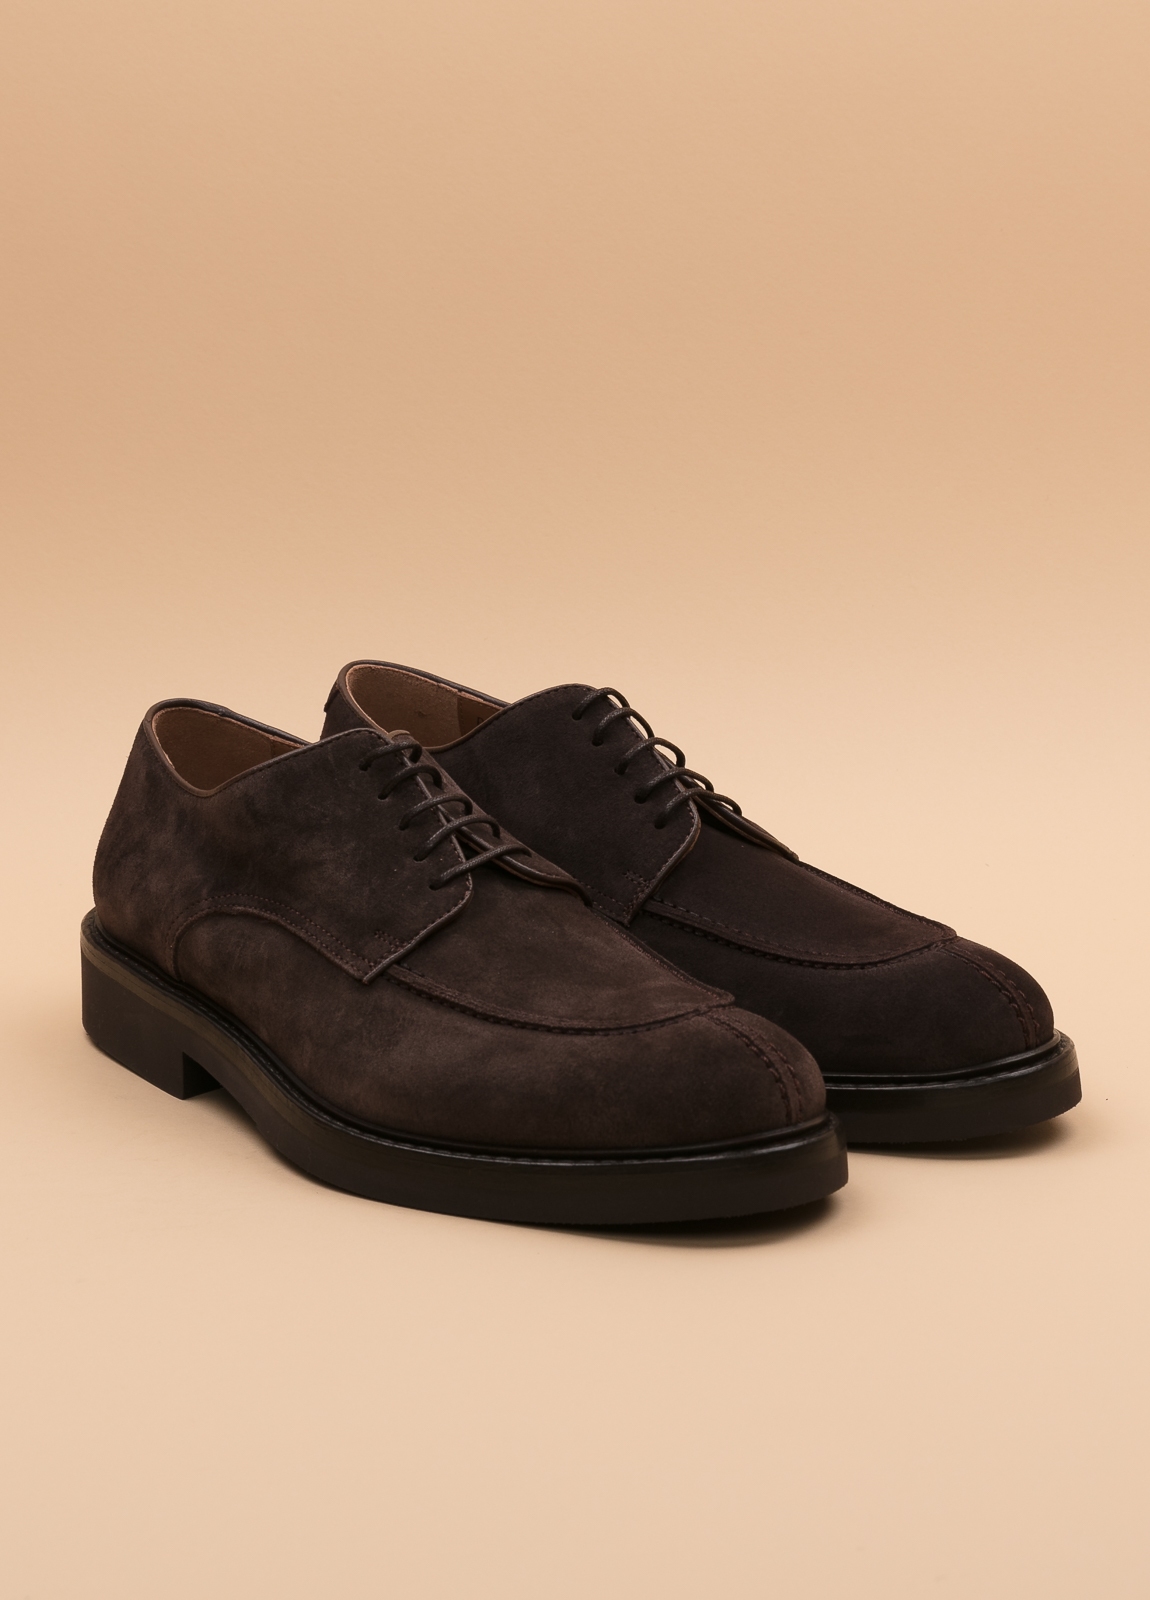 Zapato sport wear furest colección marrón oscuro - Ítem4